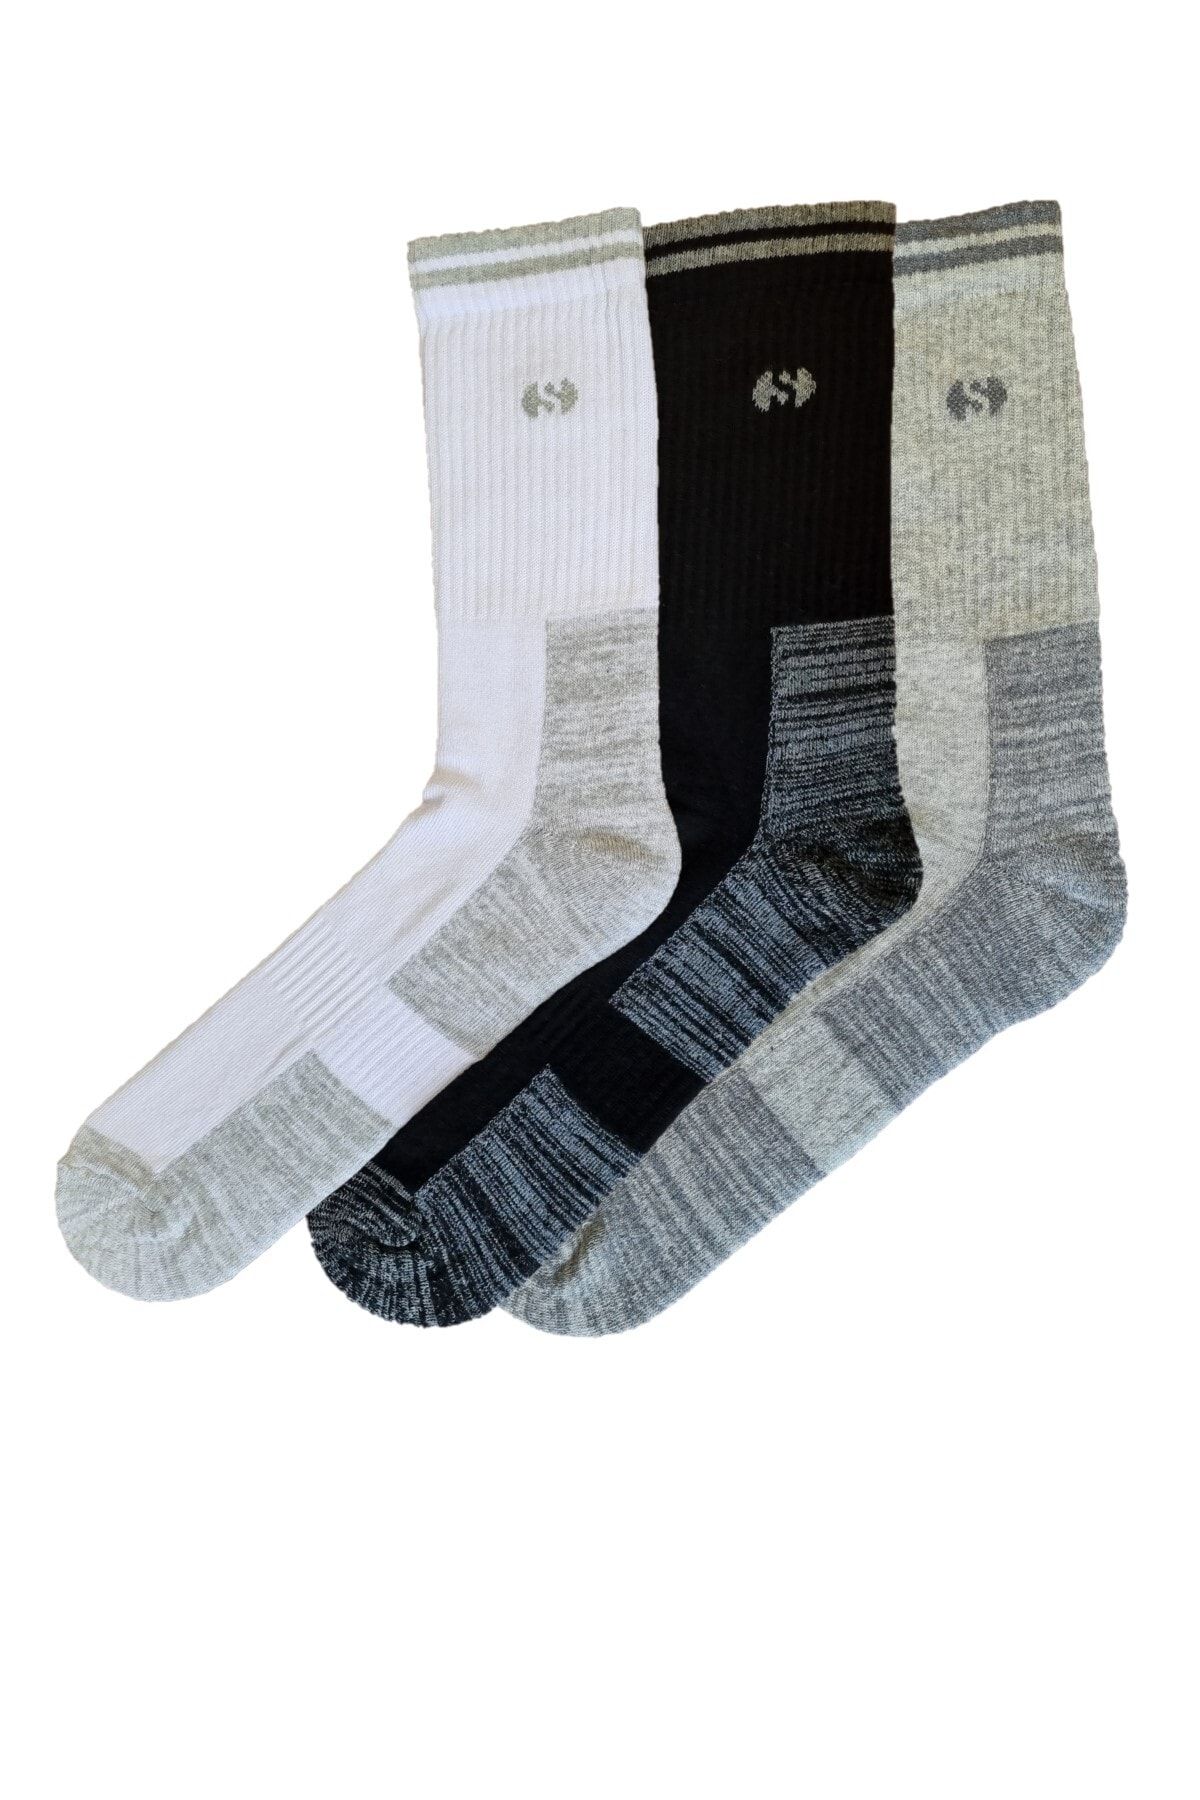 vtex socks 3'lü Spor Uzun Çorap Havlu Tabanlı Ve Kaydırmaz Lastik Bant Takviyeli